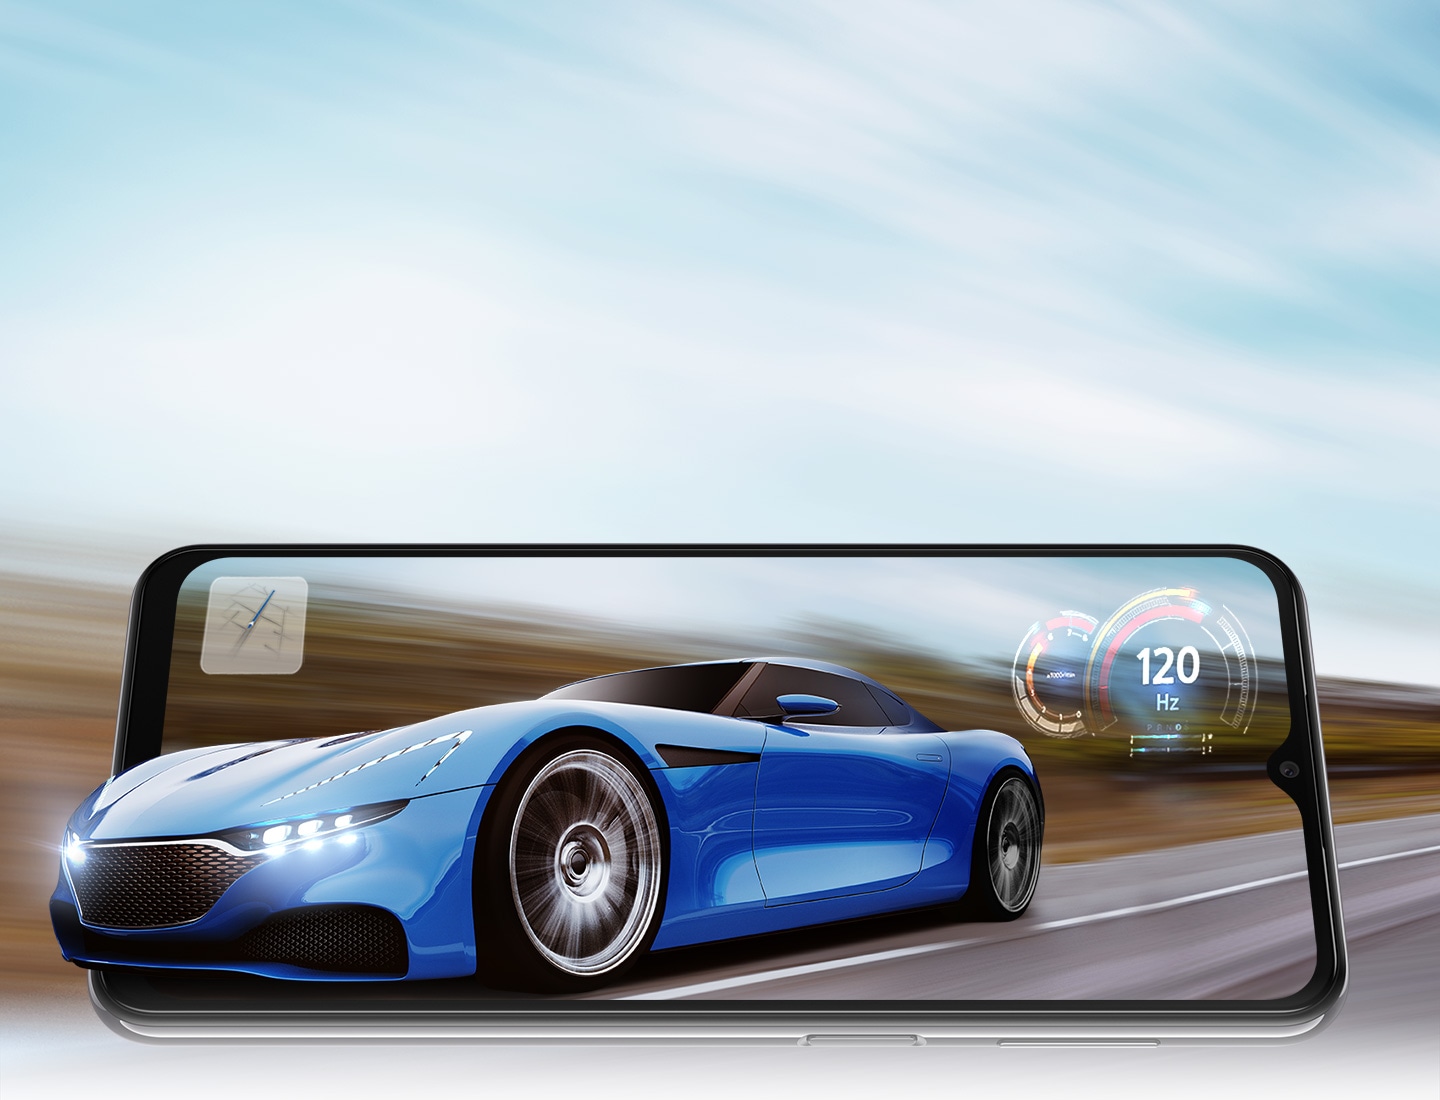 Ein Galaxy A23 5G ist im Querformat zu sehen. Auf dem Display wird ein Sportwagen dargestellt, der auf einer Straße fährt. Der Hintergrund ist unscharf, um anzuzeigen, dass das Auto mit hohem Tempo unterwegs ist. Der vordere Teil des Autos ragt leicht über den Rahmen des Smartphones hinaus, so als ob das Auto aus dem Display herausragen würde. In der Mitte sind außerdem eine Landkarte und ein Tachometer mit 120 Hz zu sehen, was auf die schnelle Bildwiederholfrequenz des Smartphones hinweist.